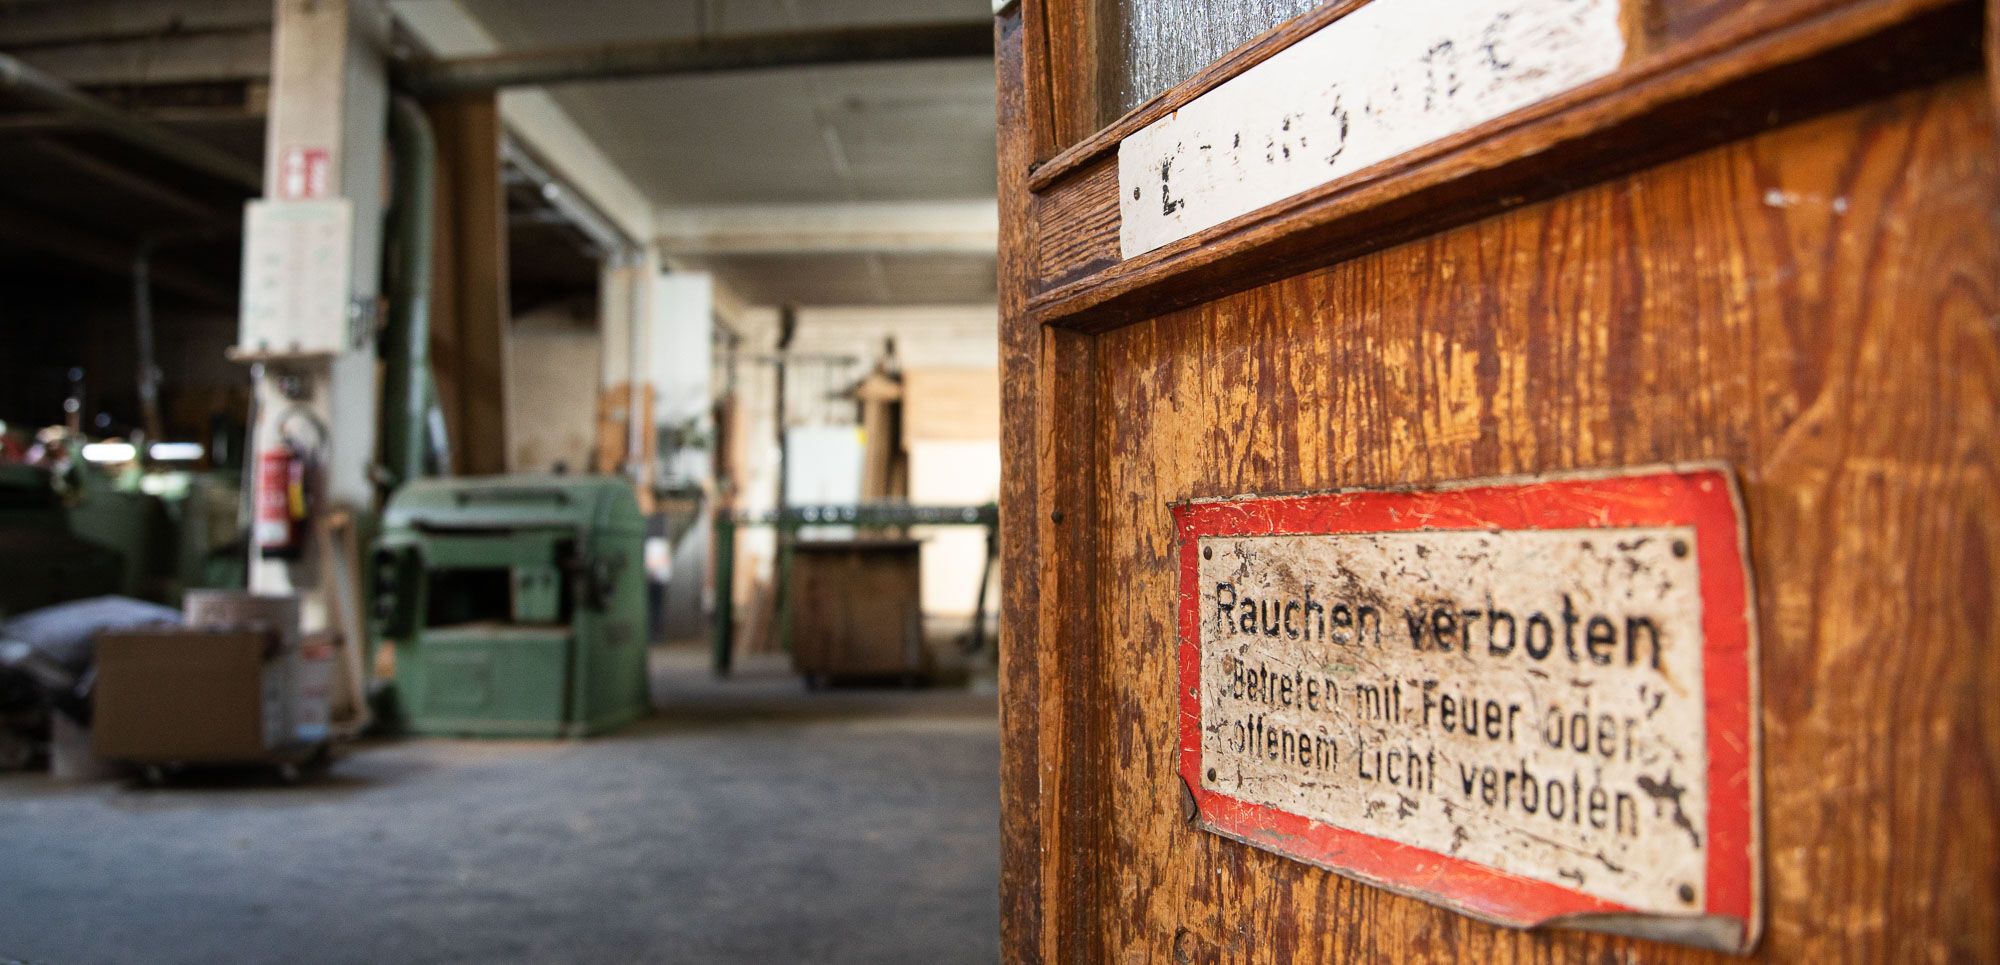 Die Aufnahme des Frankfurter Fotografen Fritz Philipp zeigt den Eingangsbereich einer alten Schreinerei, im Vordergrund ist die Holztür mit alten Schildern zu sehen, im Hintergrund die weitläufige Industriehalle, die zu einem Mietstudio wird, 2020: Great things to come